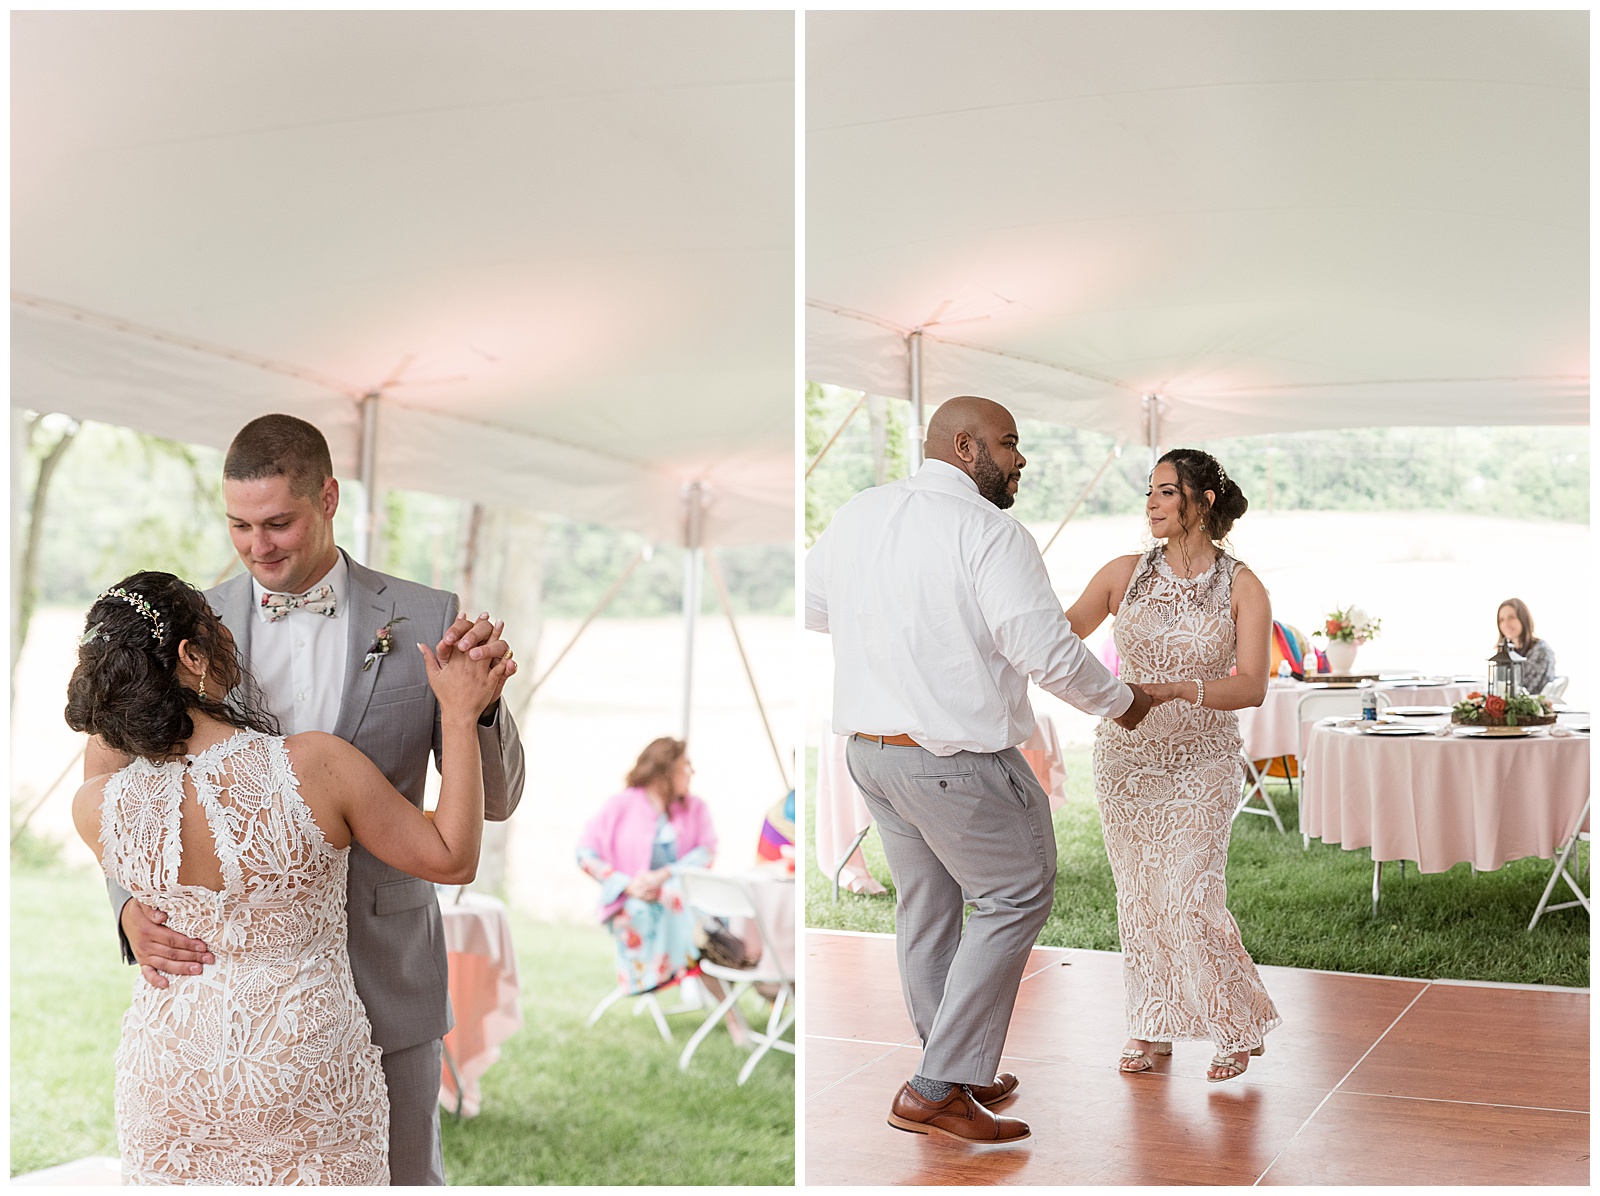 bride and groom and wedding guests dancing on dance floor inside outdoor wedding reception tent